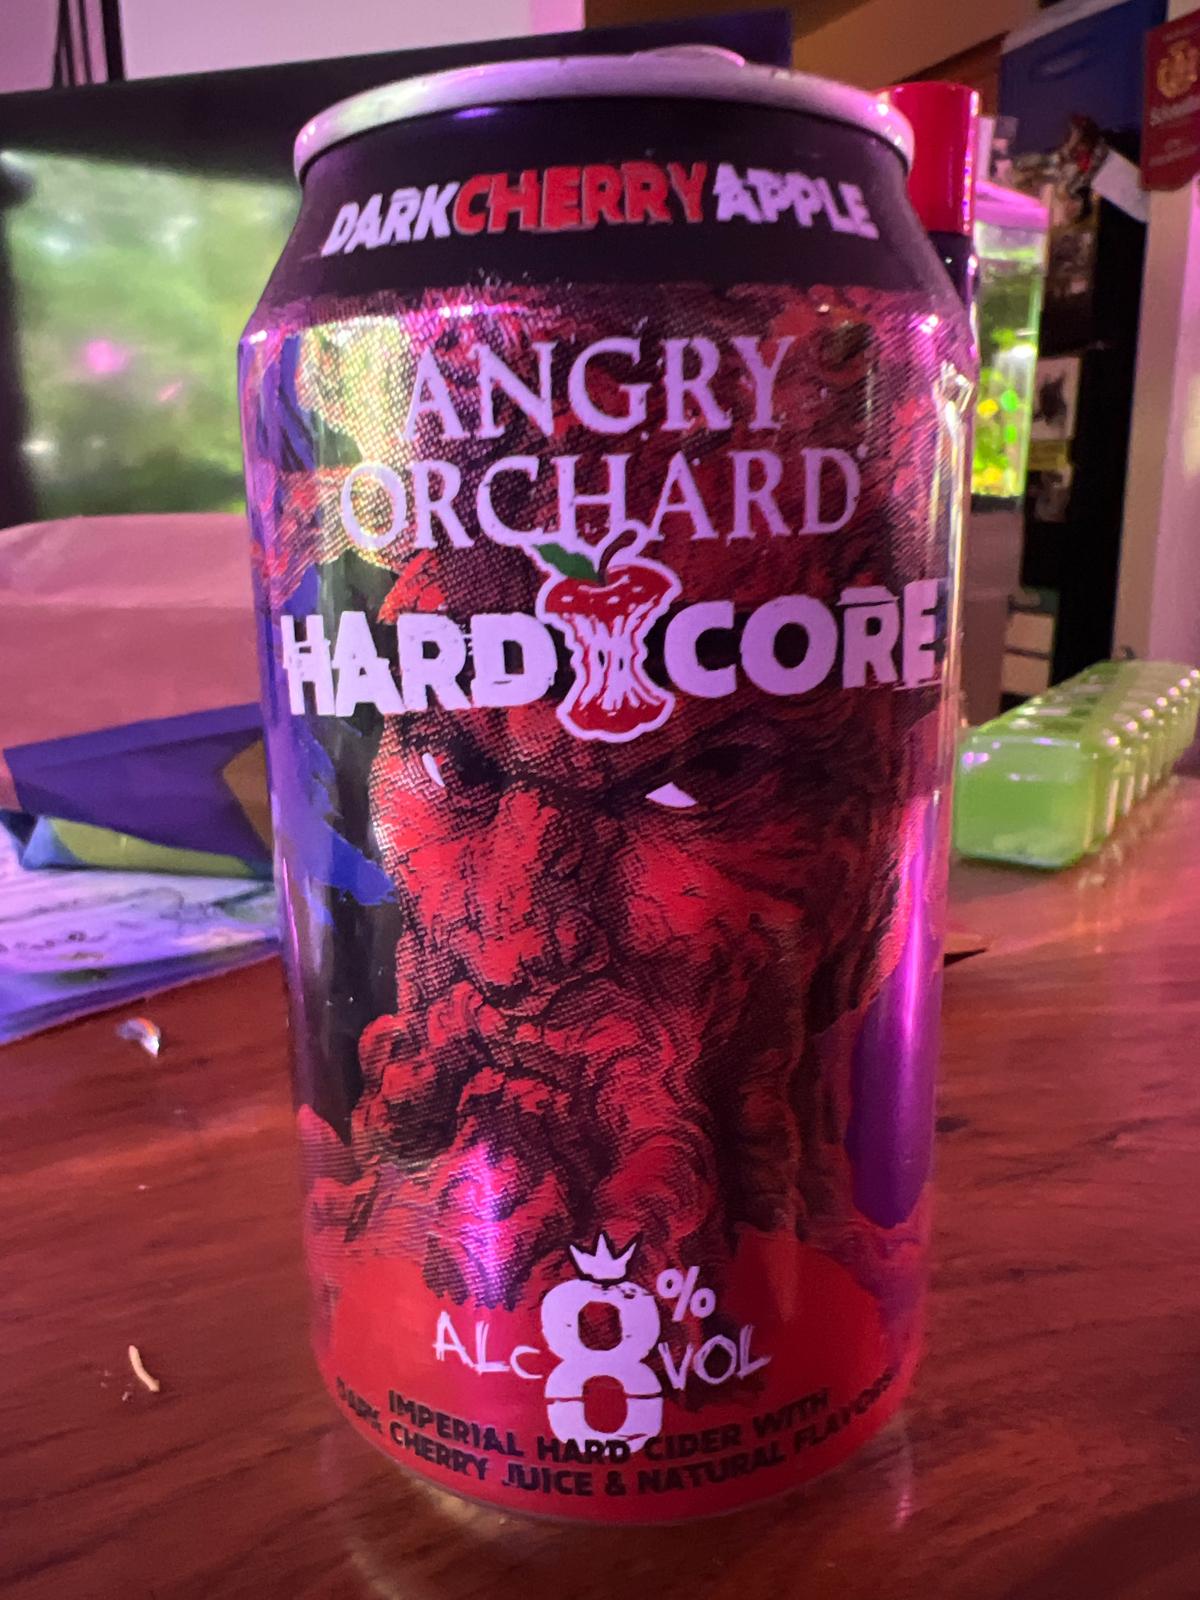 Hardcore Dark Cherry Apple Cider